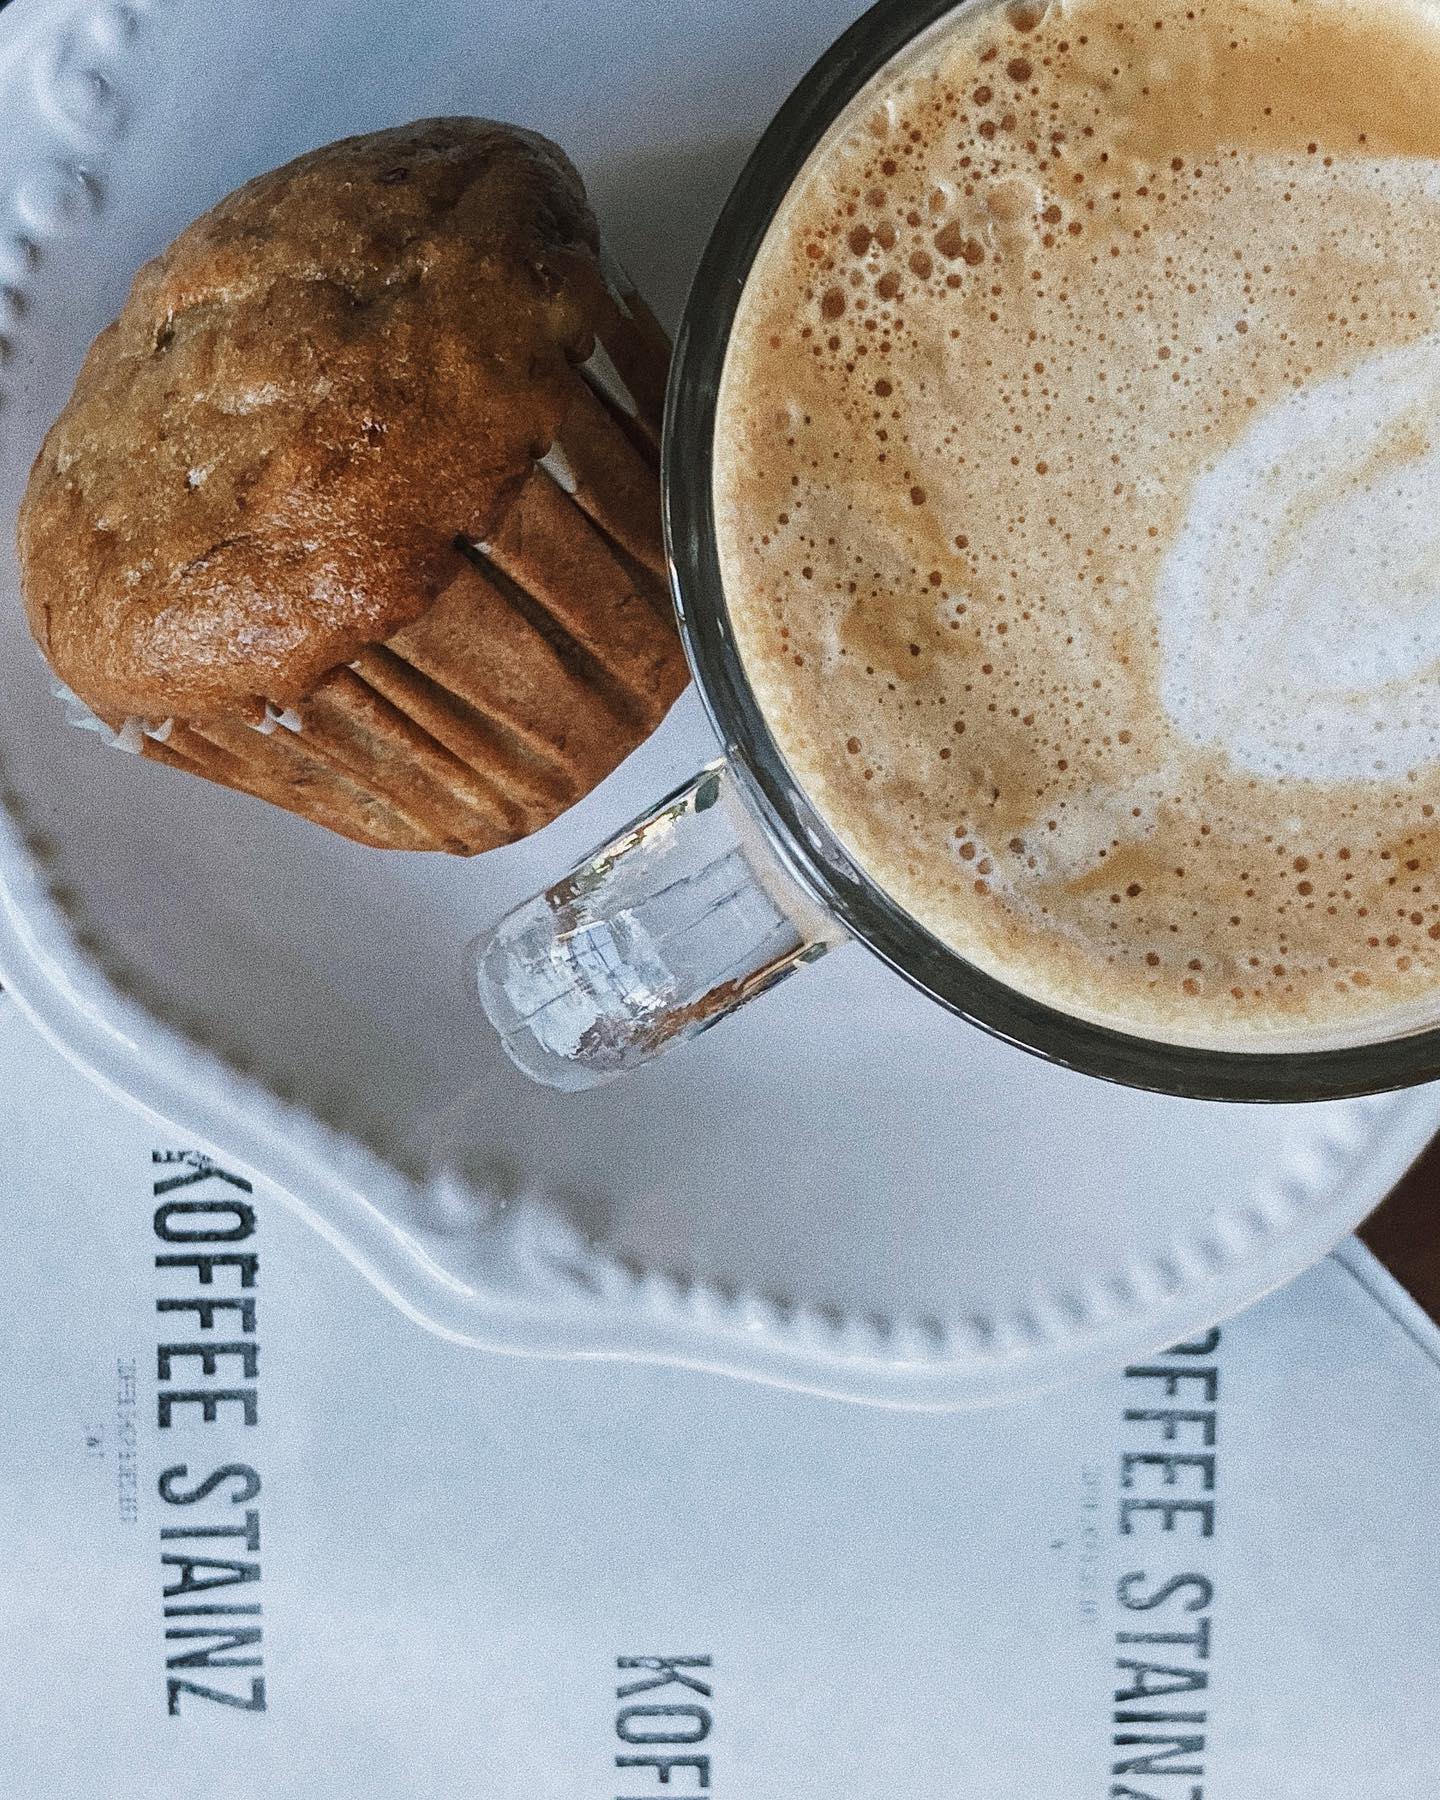 koffee-stainz-belize-orange-walk-cafe-muffin